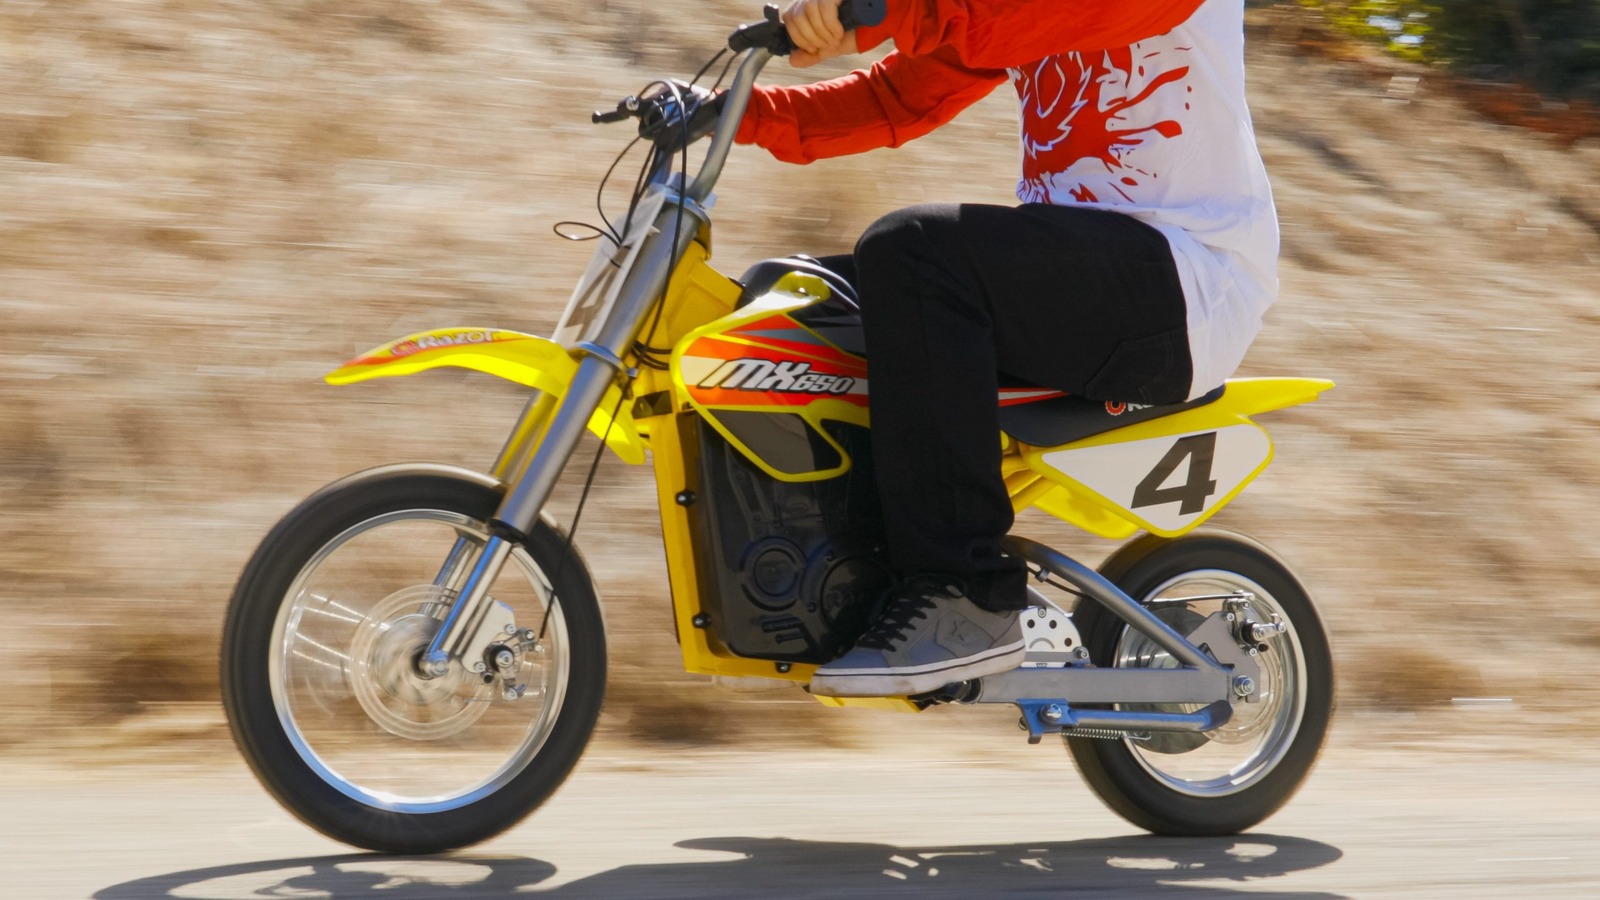 ¿Cuál es la velocidad máxima de la motocicleta MX650 de Razor y cuánto peso puede soportar de forma segura?